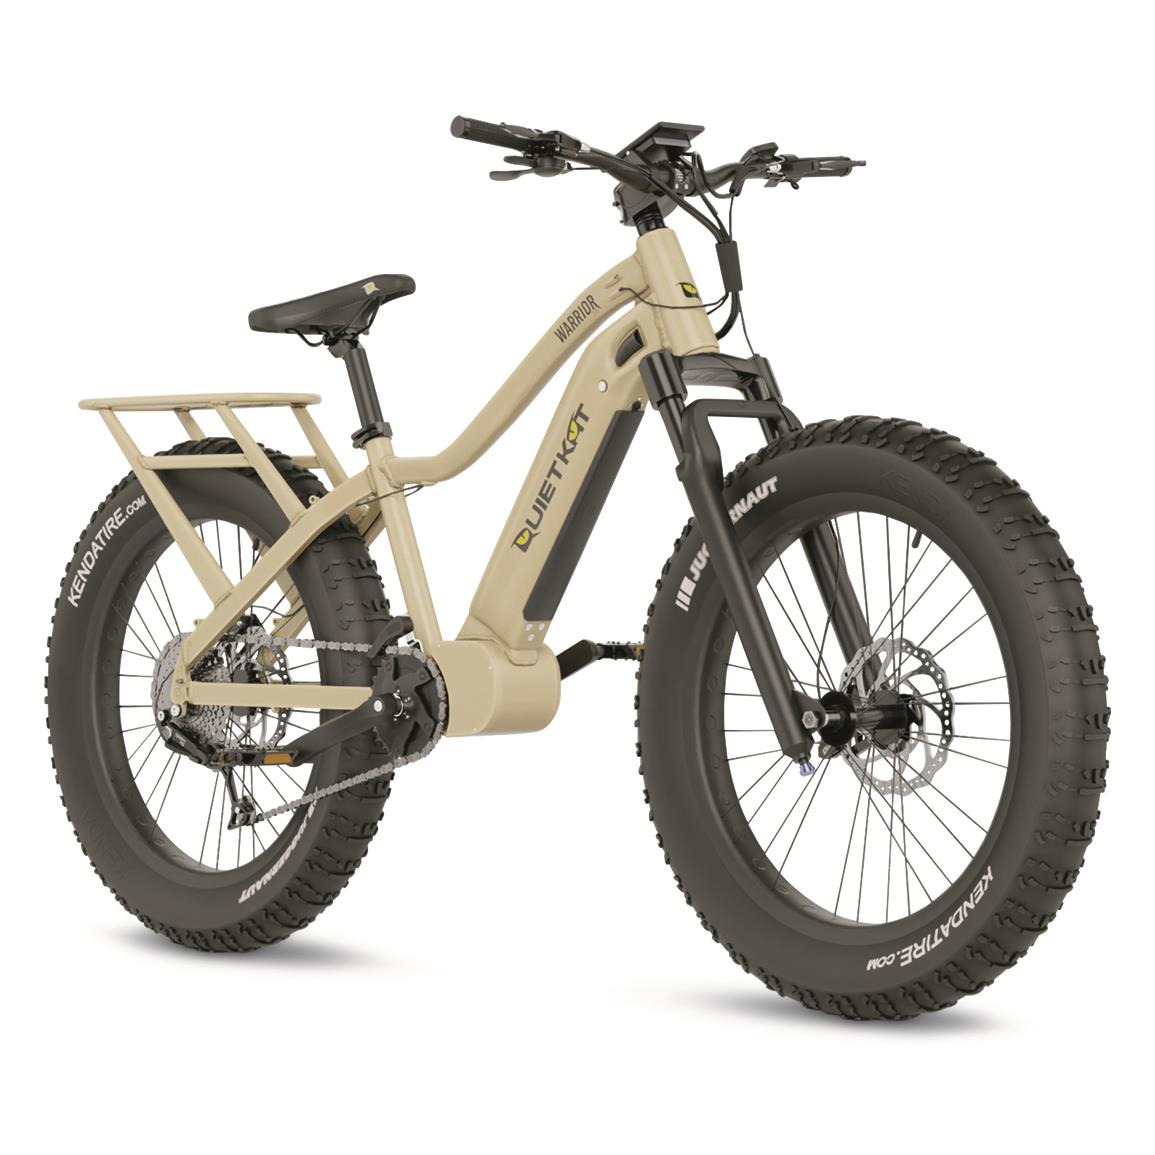 QuietKat Warrior 1000 Electric Bike, Sandstone